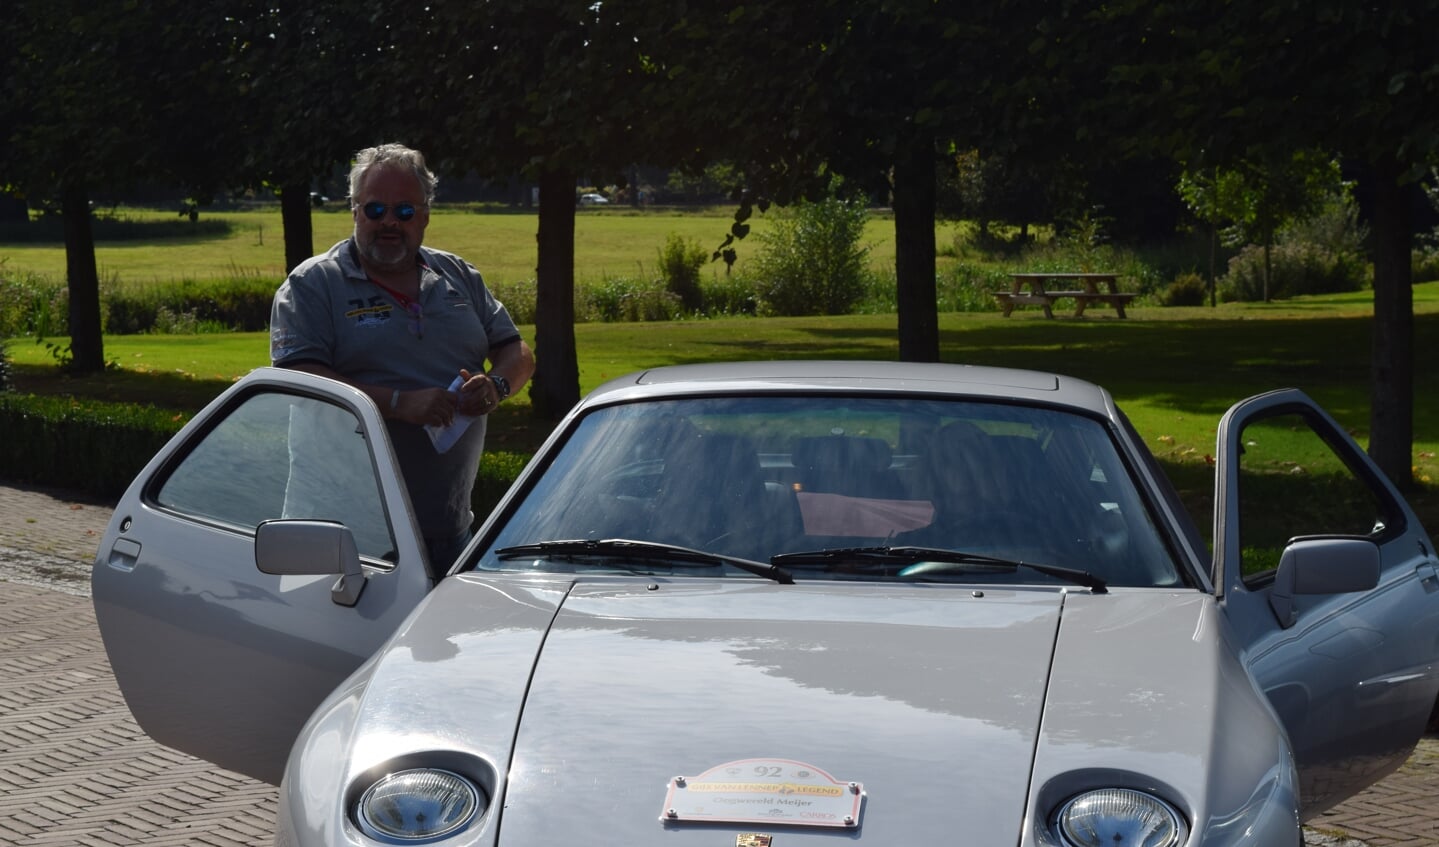 Veilingmeester en deelnemer Bas van Werven stapt uit zijn Porsche 928S 